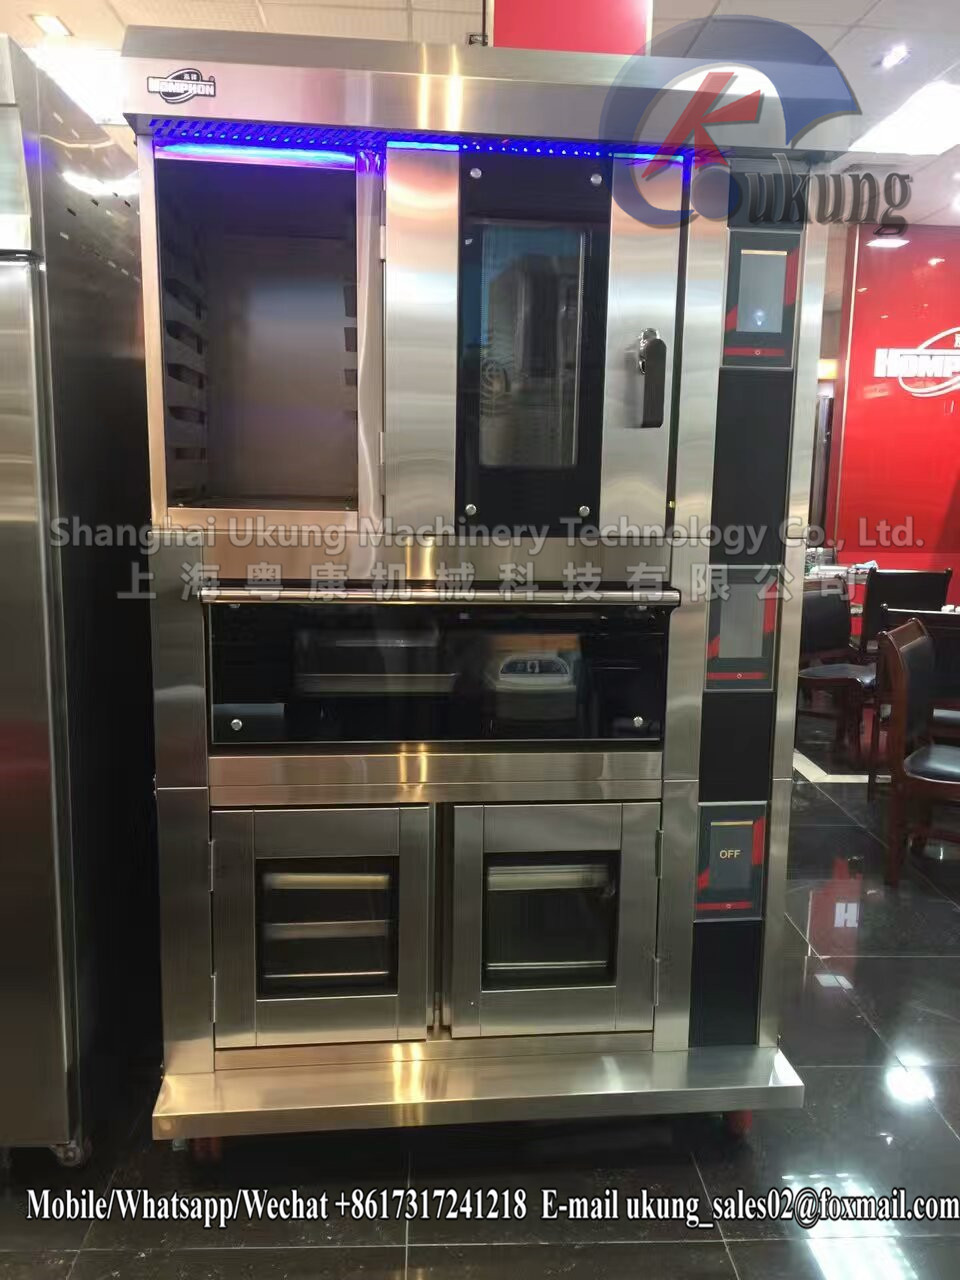 商用380V烤箱醒发箱组合系列多功能烘培机械